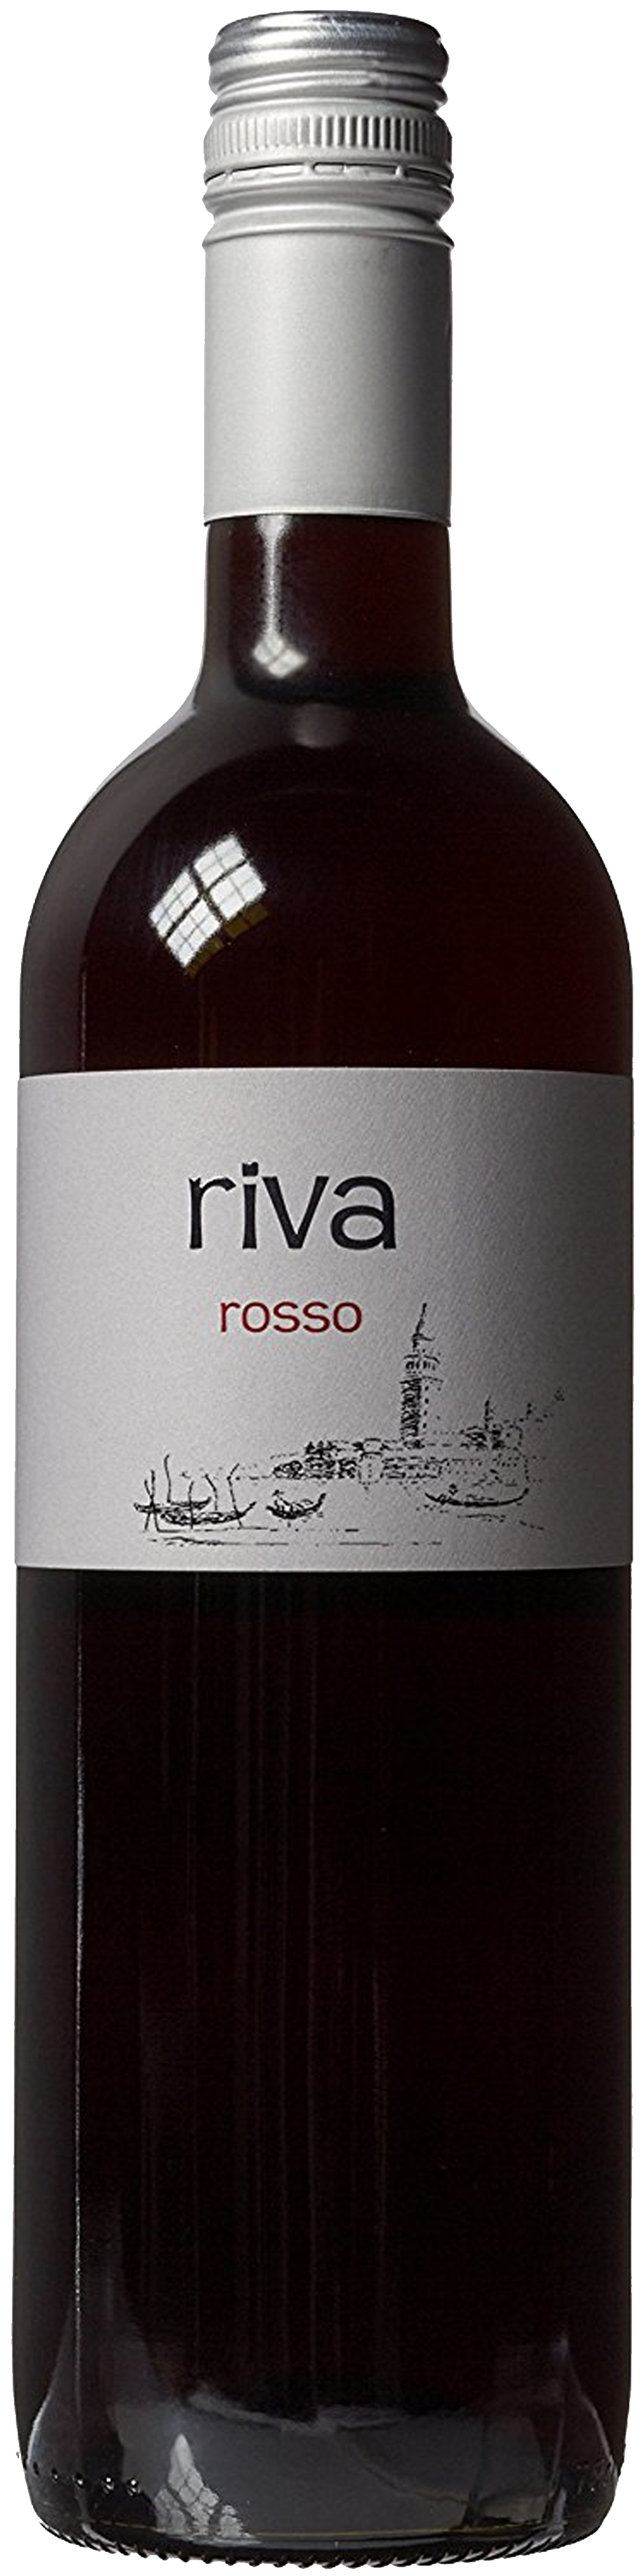 Bottle shot of Riva Rosso